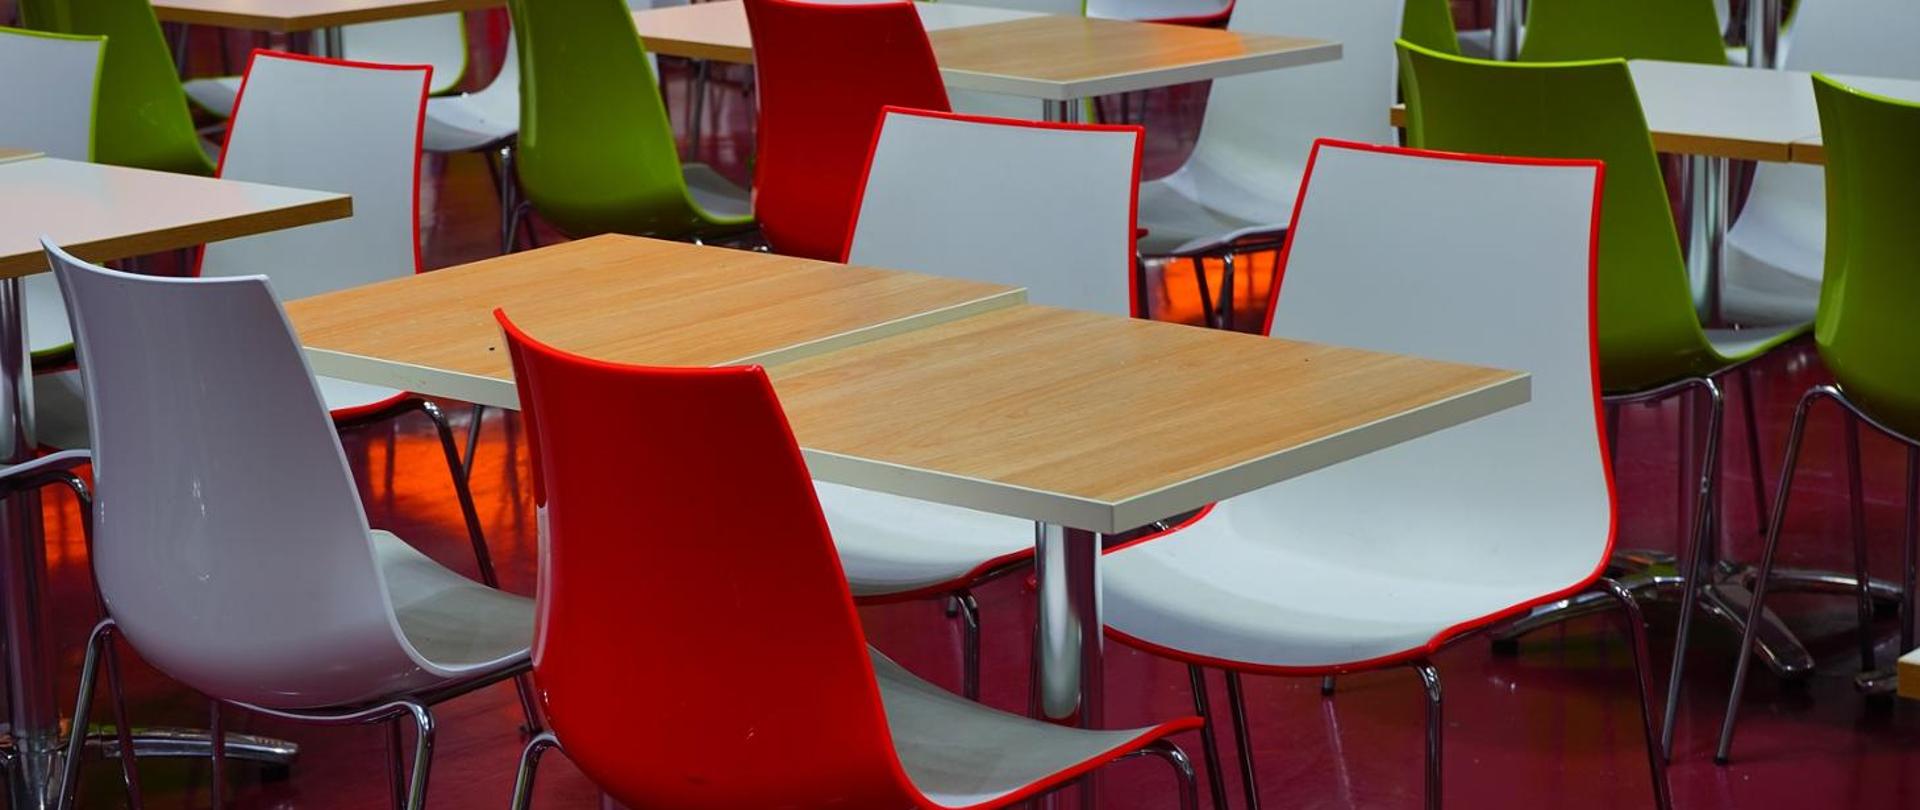 Stołówka szkolna - krzesła i stoły